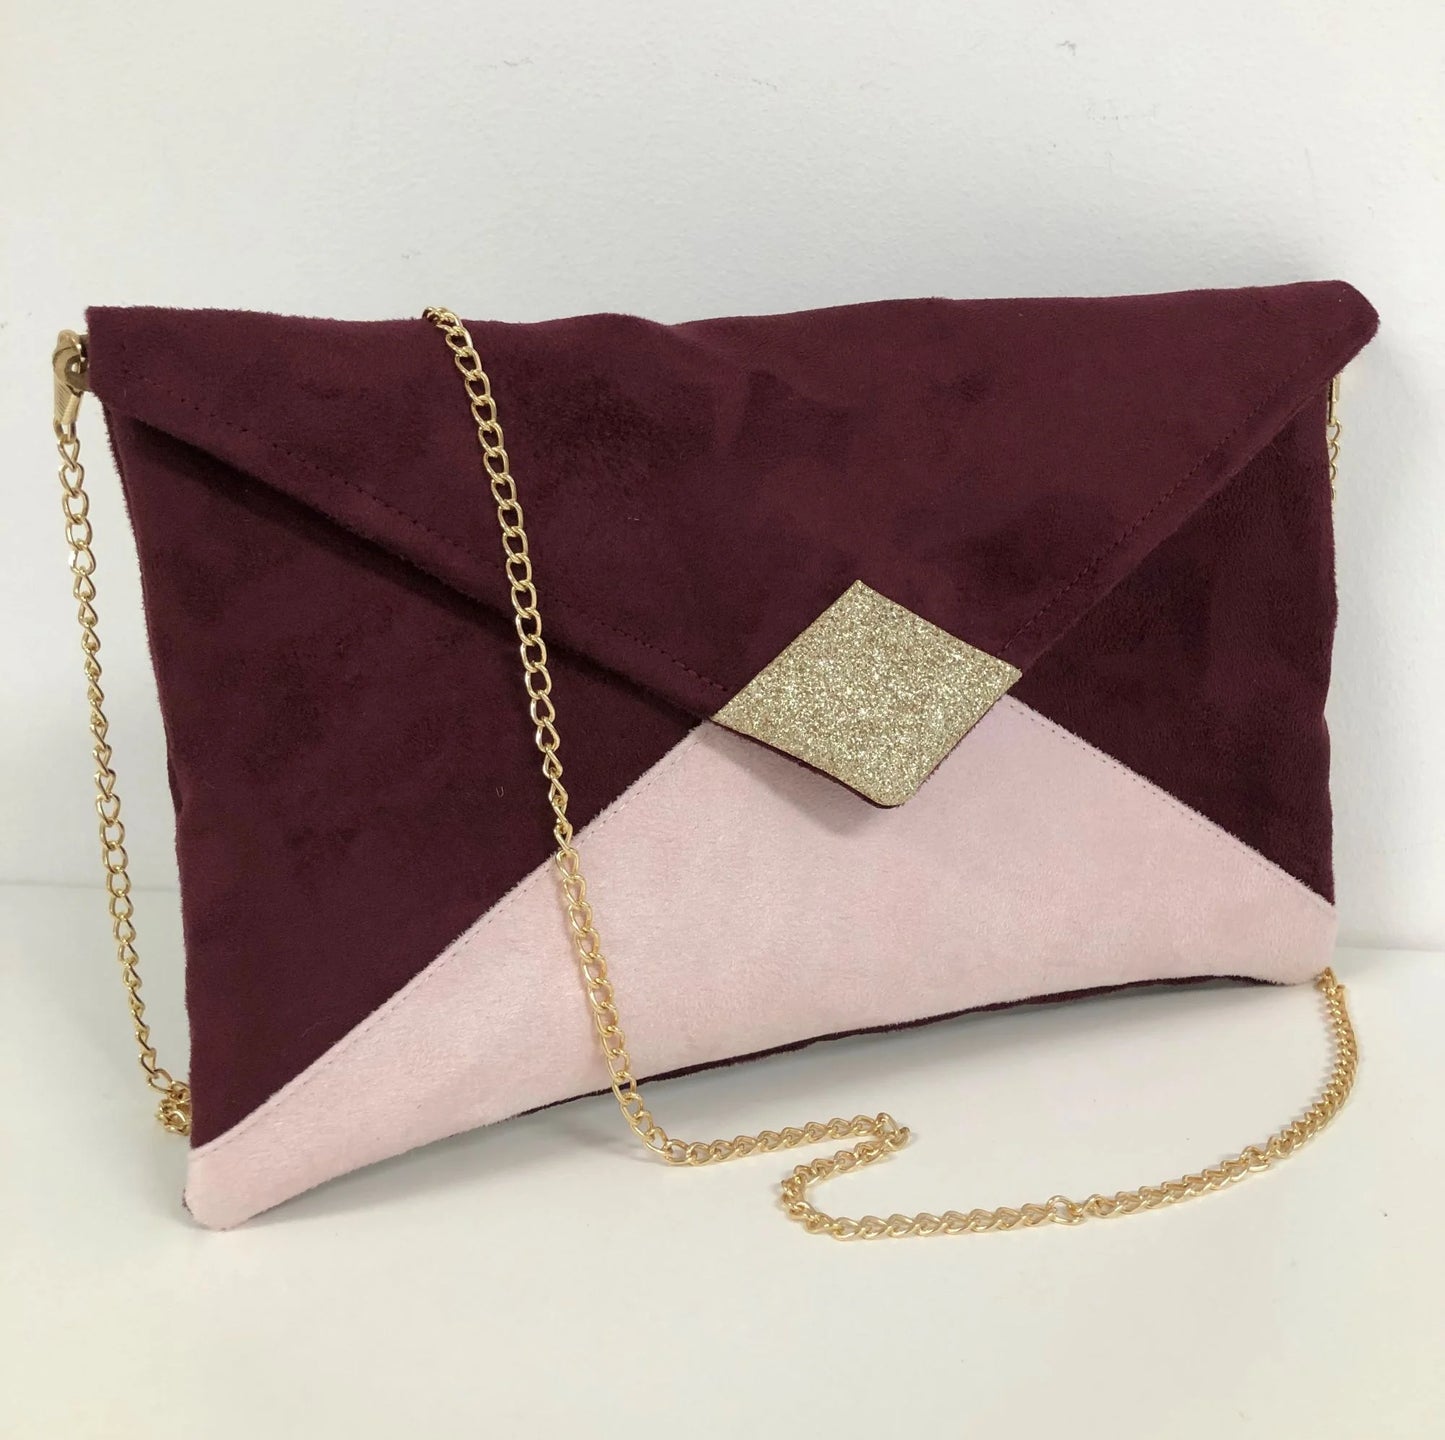 Le sac pochette Isa bordeaux et rose pâle à paillettes dorées